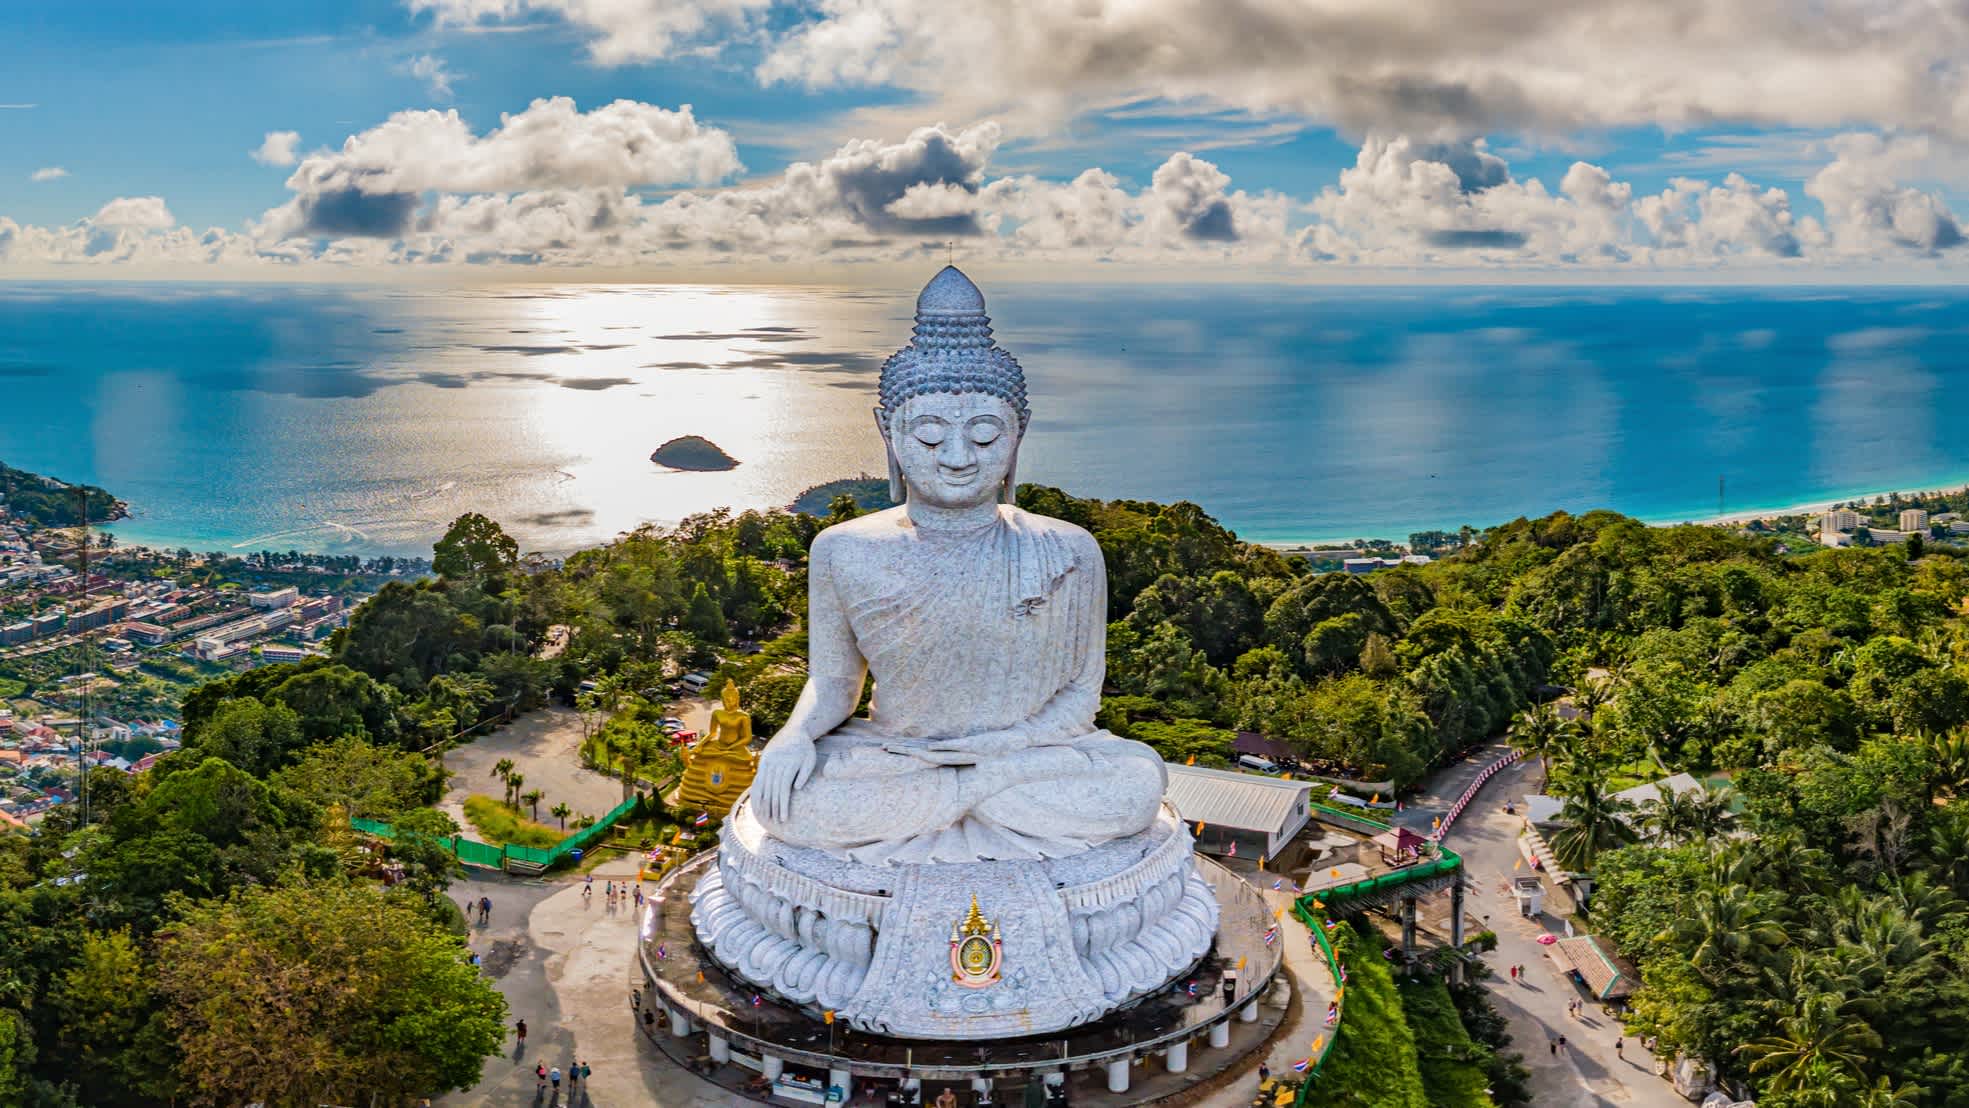 Luftaufnahme der große Buddha in Phuket, Thailand

